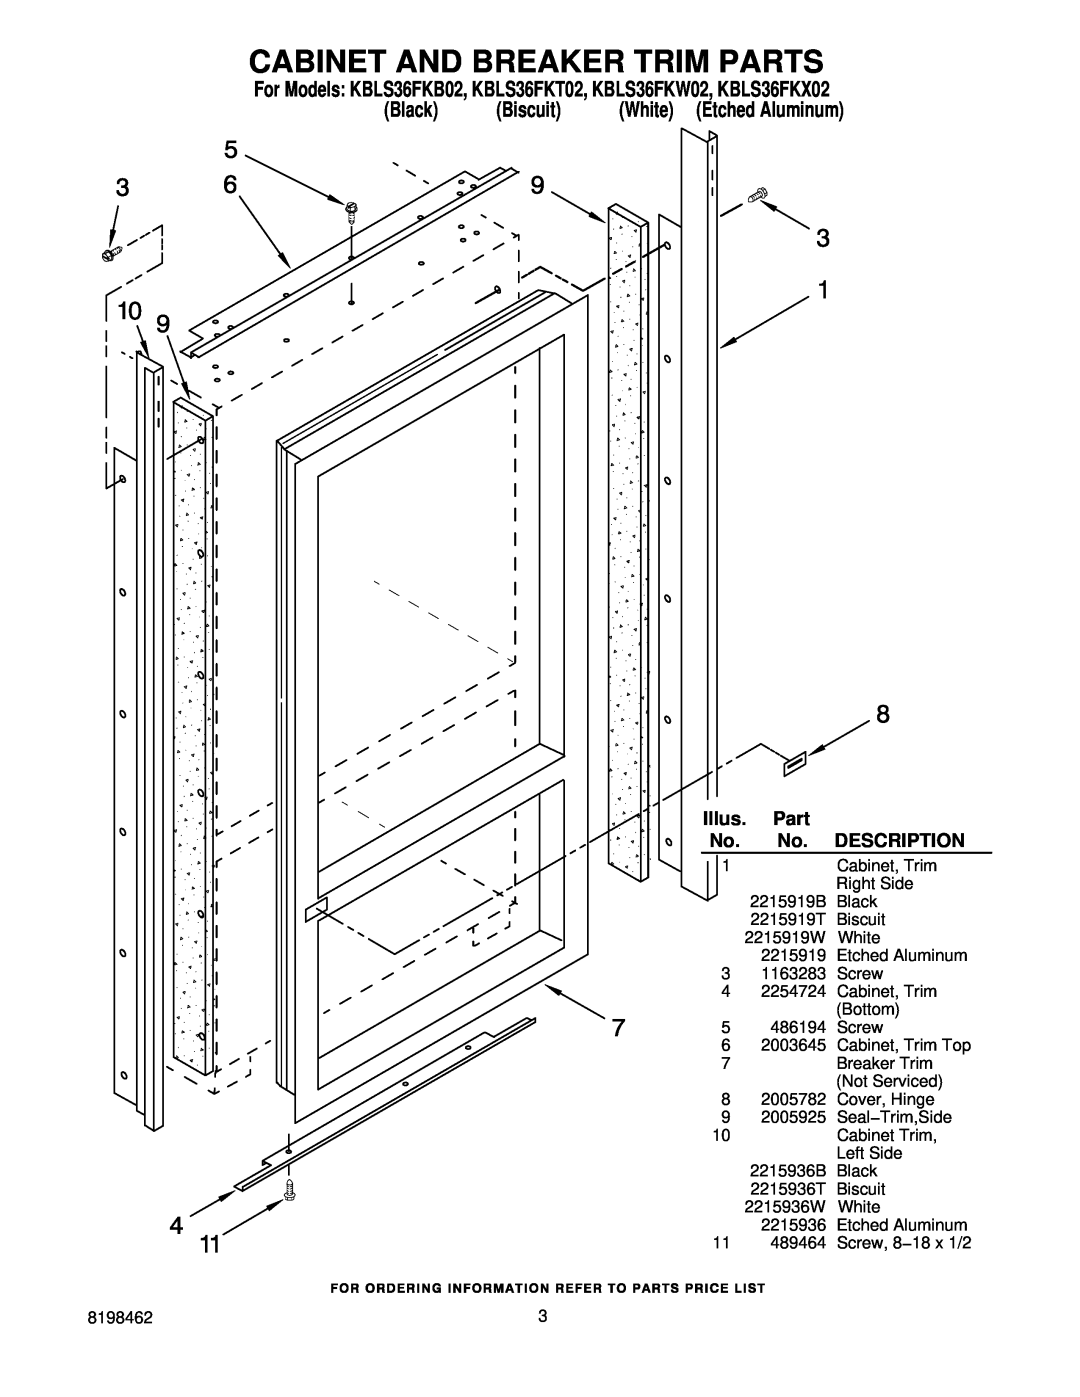 KitchenAid KBLS36FKX02 manual Cabinet And Breaker Trim Parts, Illus, Description, Black, Biscuit, White Etched Aluminum 